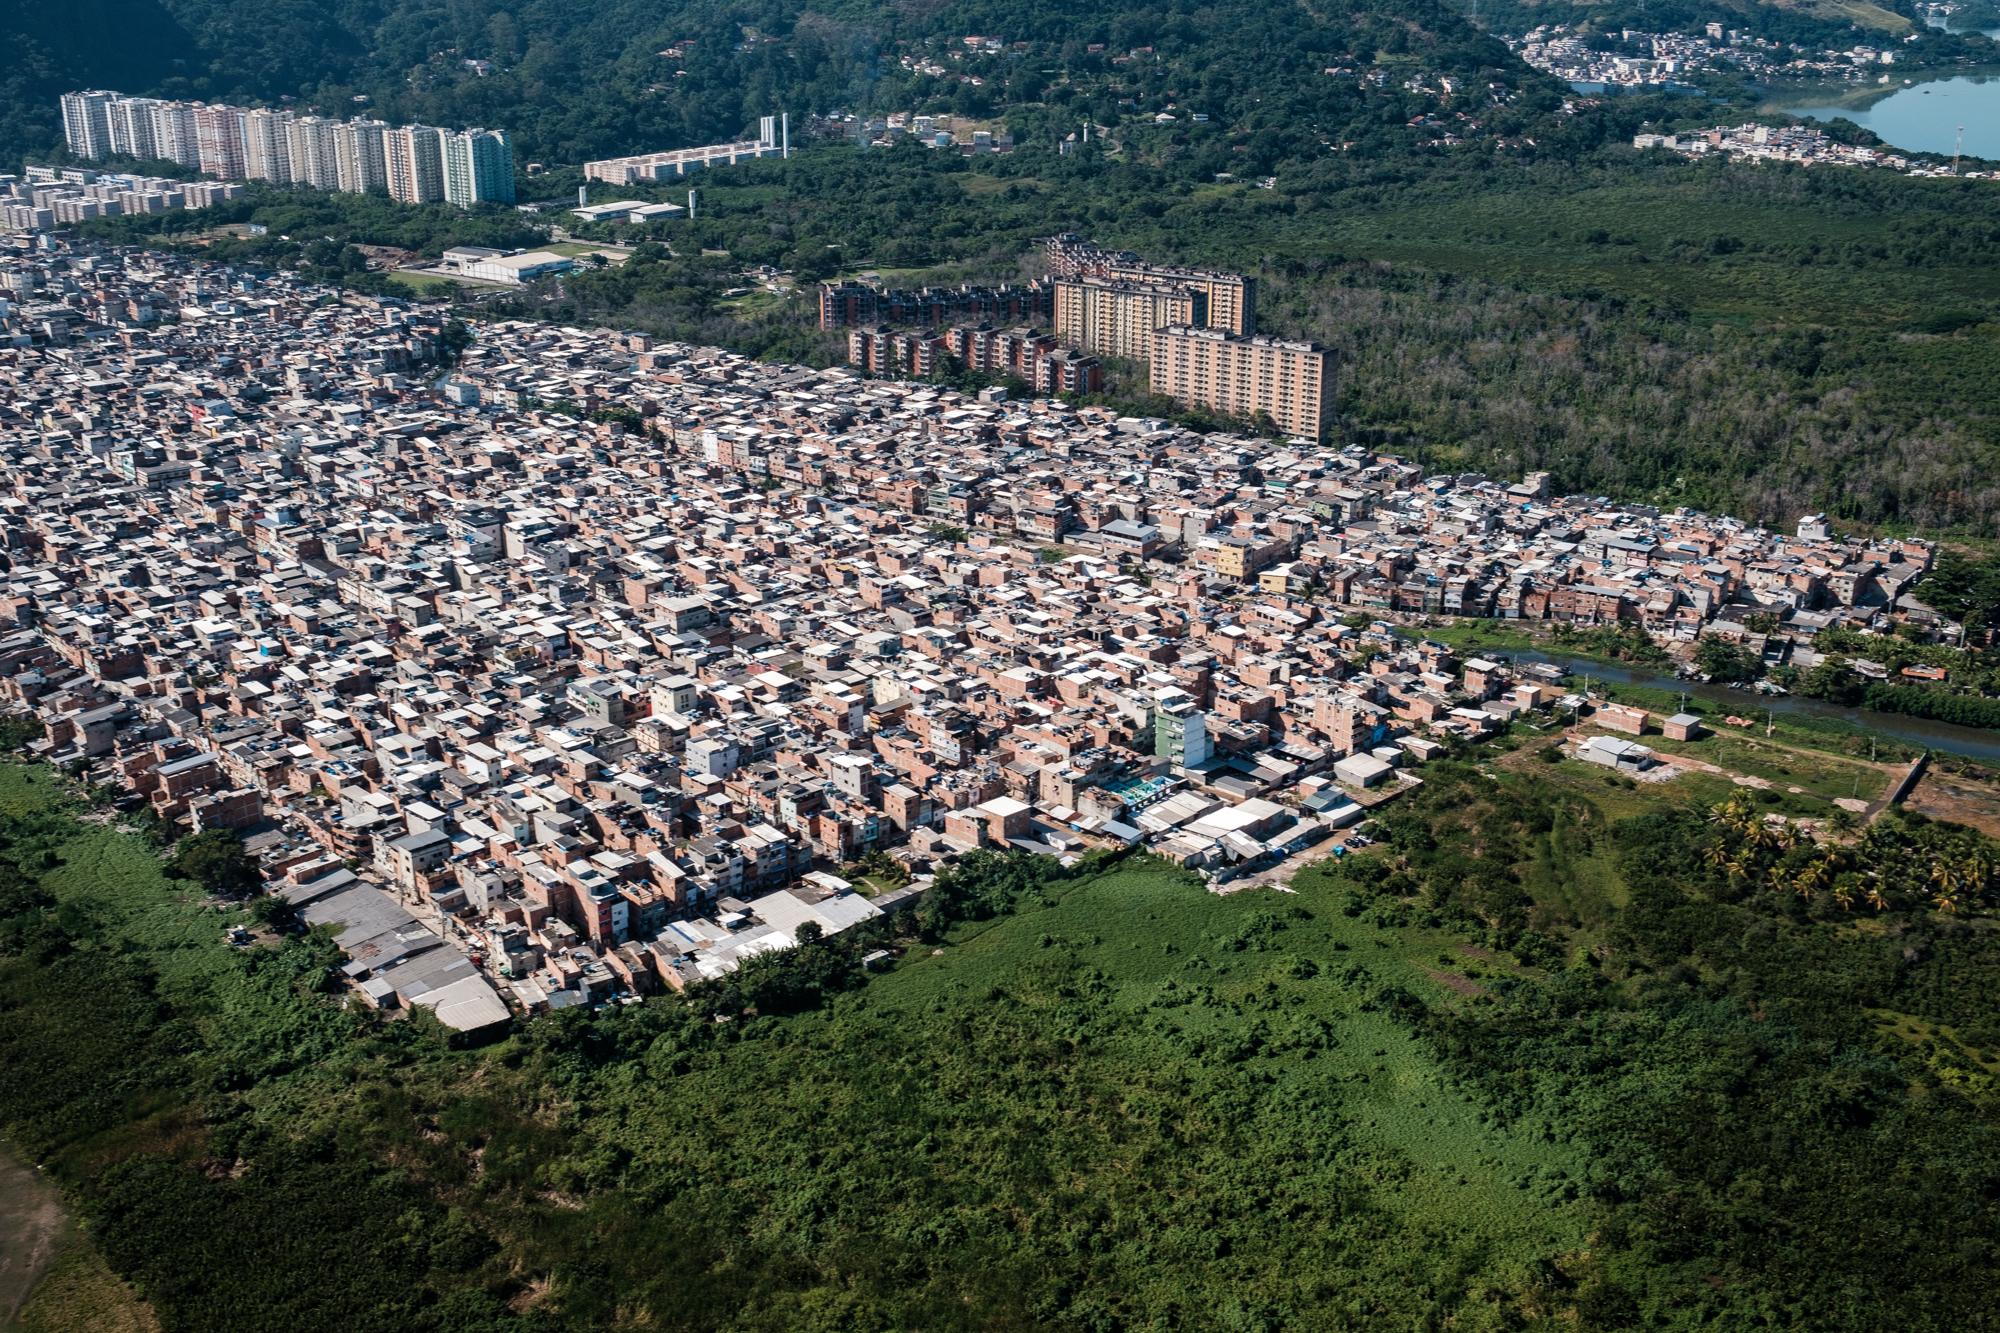 Baía Viva - The neighbourghood of Rio das Pedras, in Rio de Janeiro's...